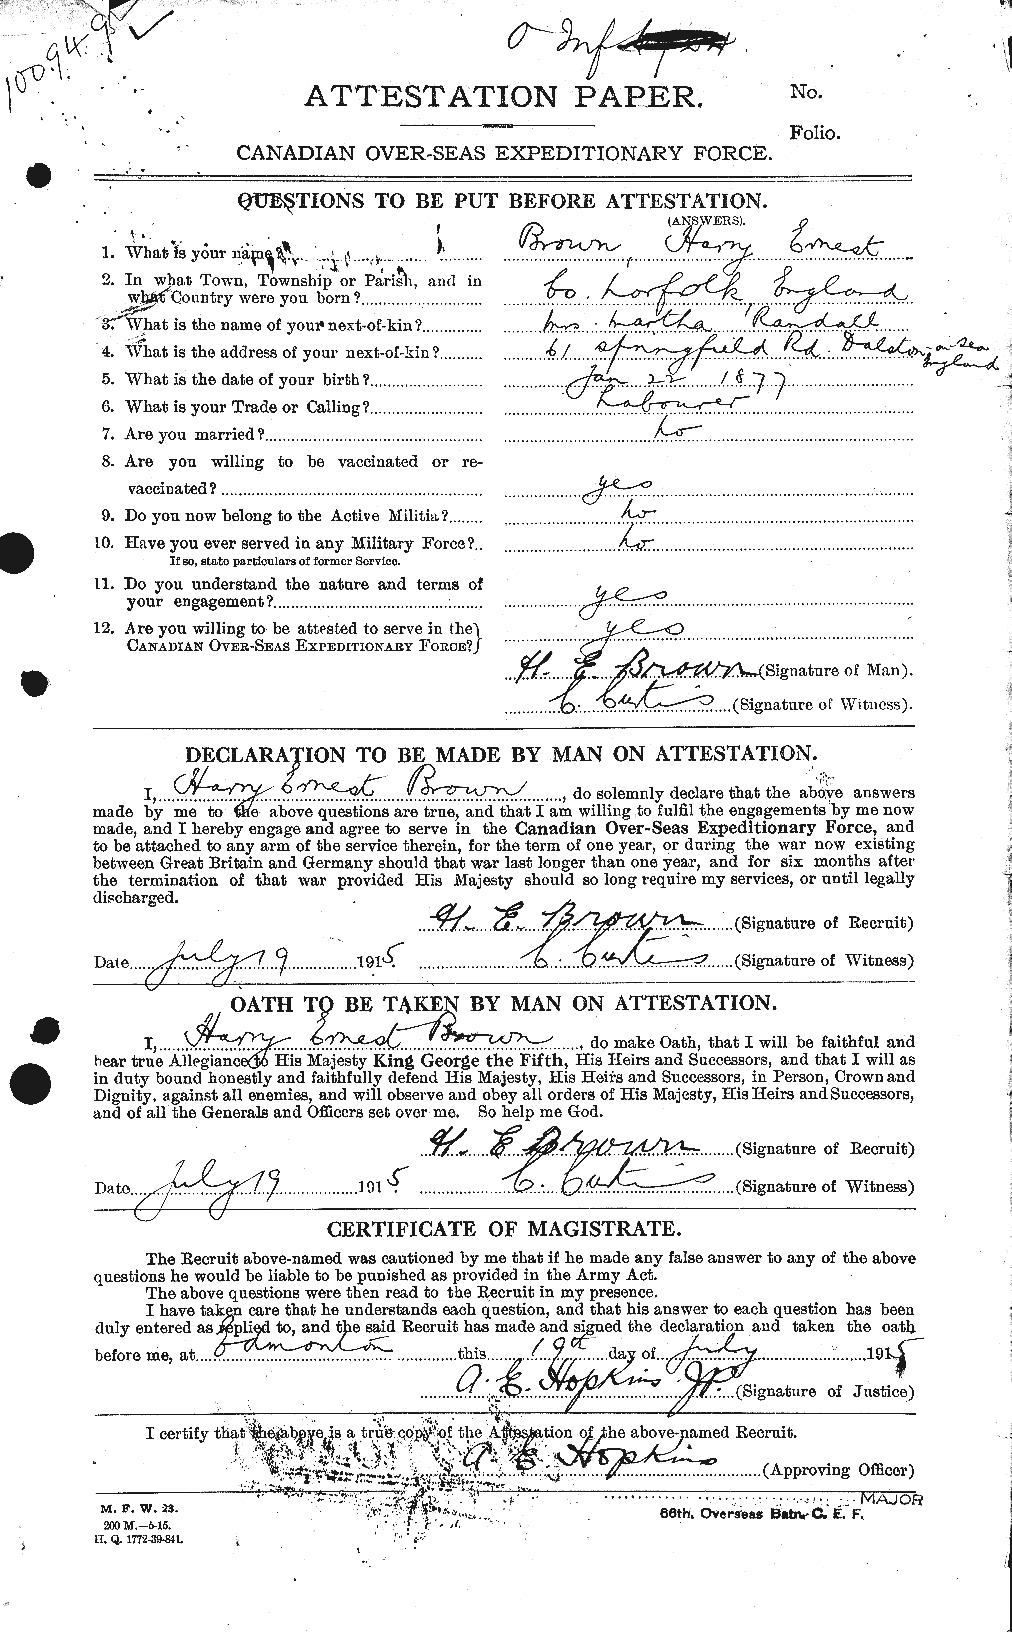 Dossiers du Personnel de la Première Guerre mondiale - CEC 265453a